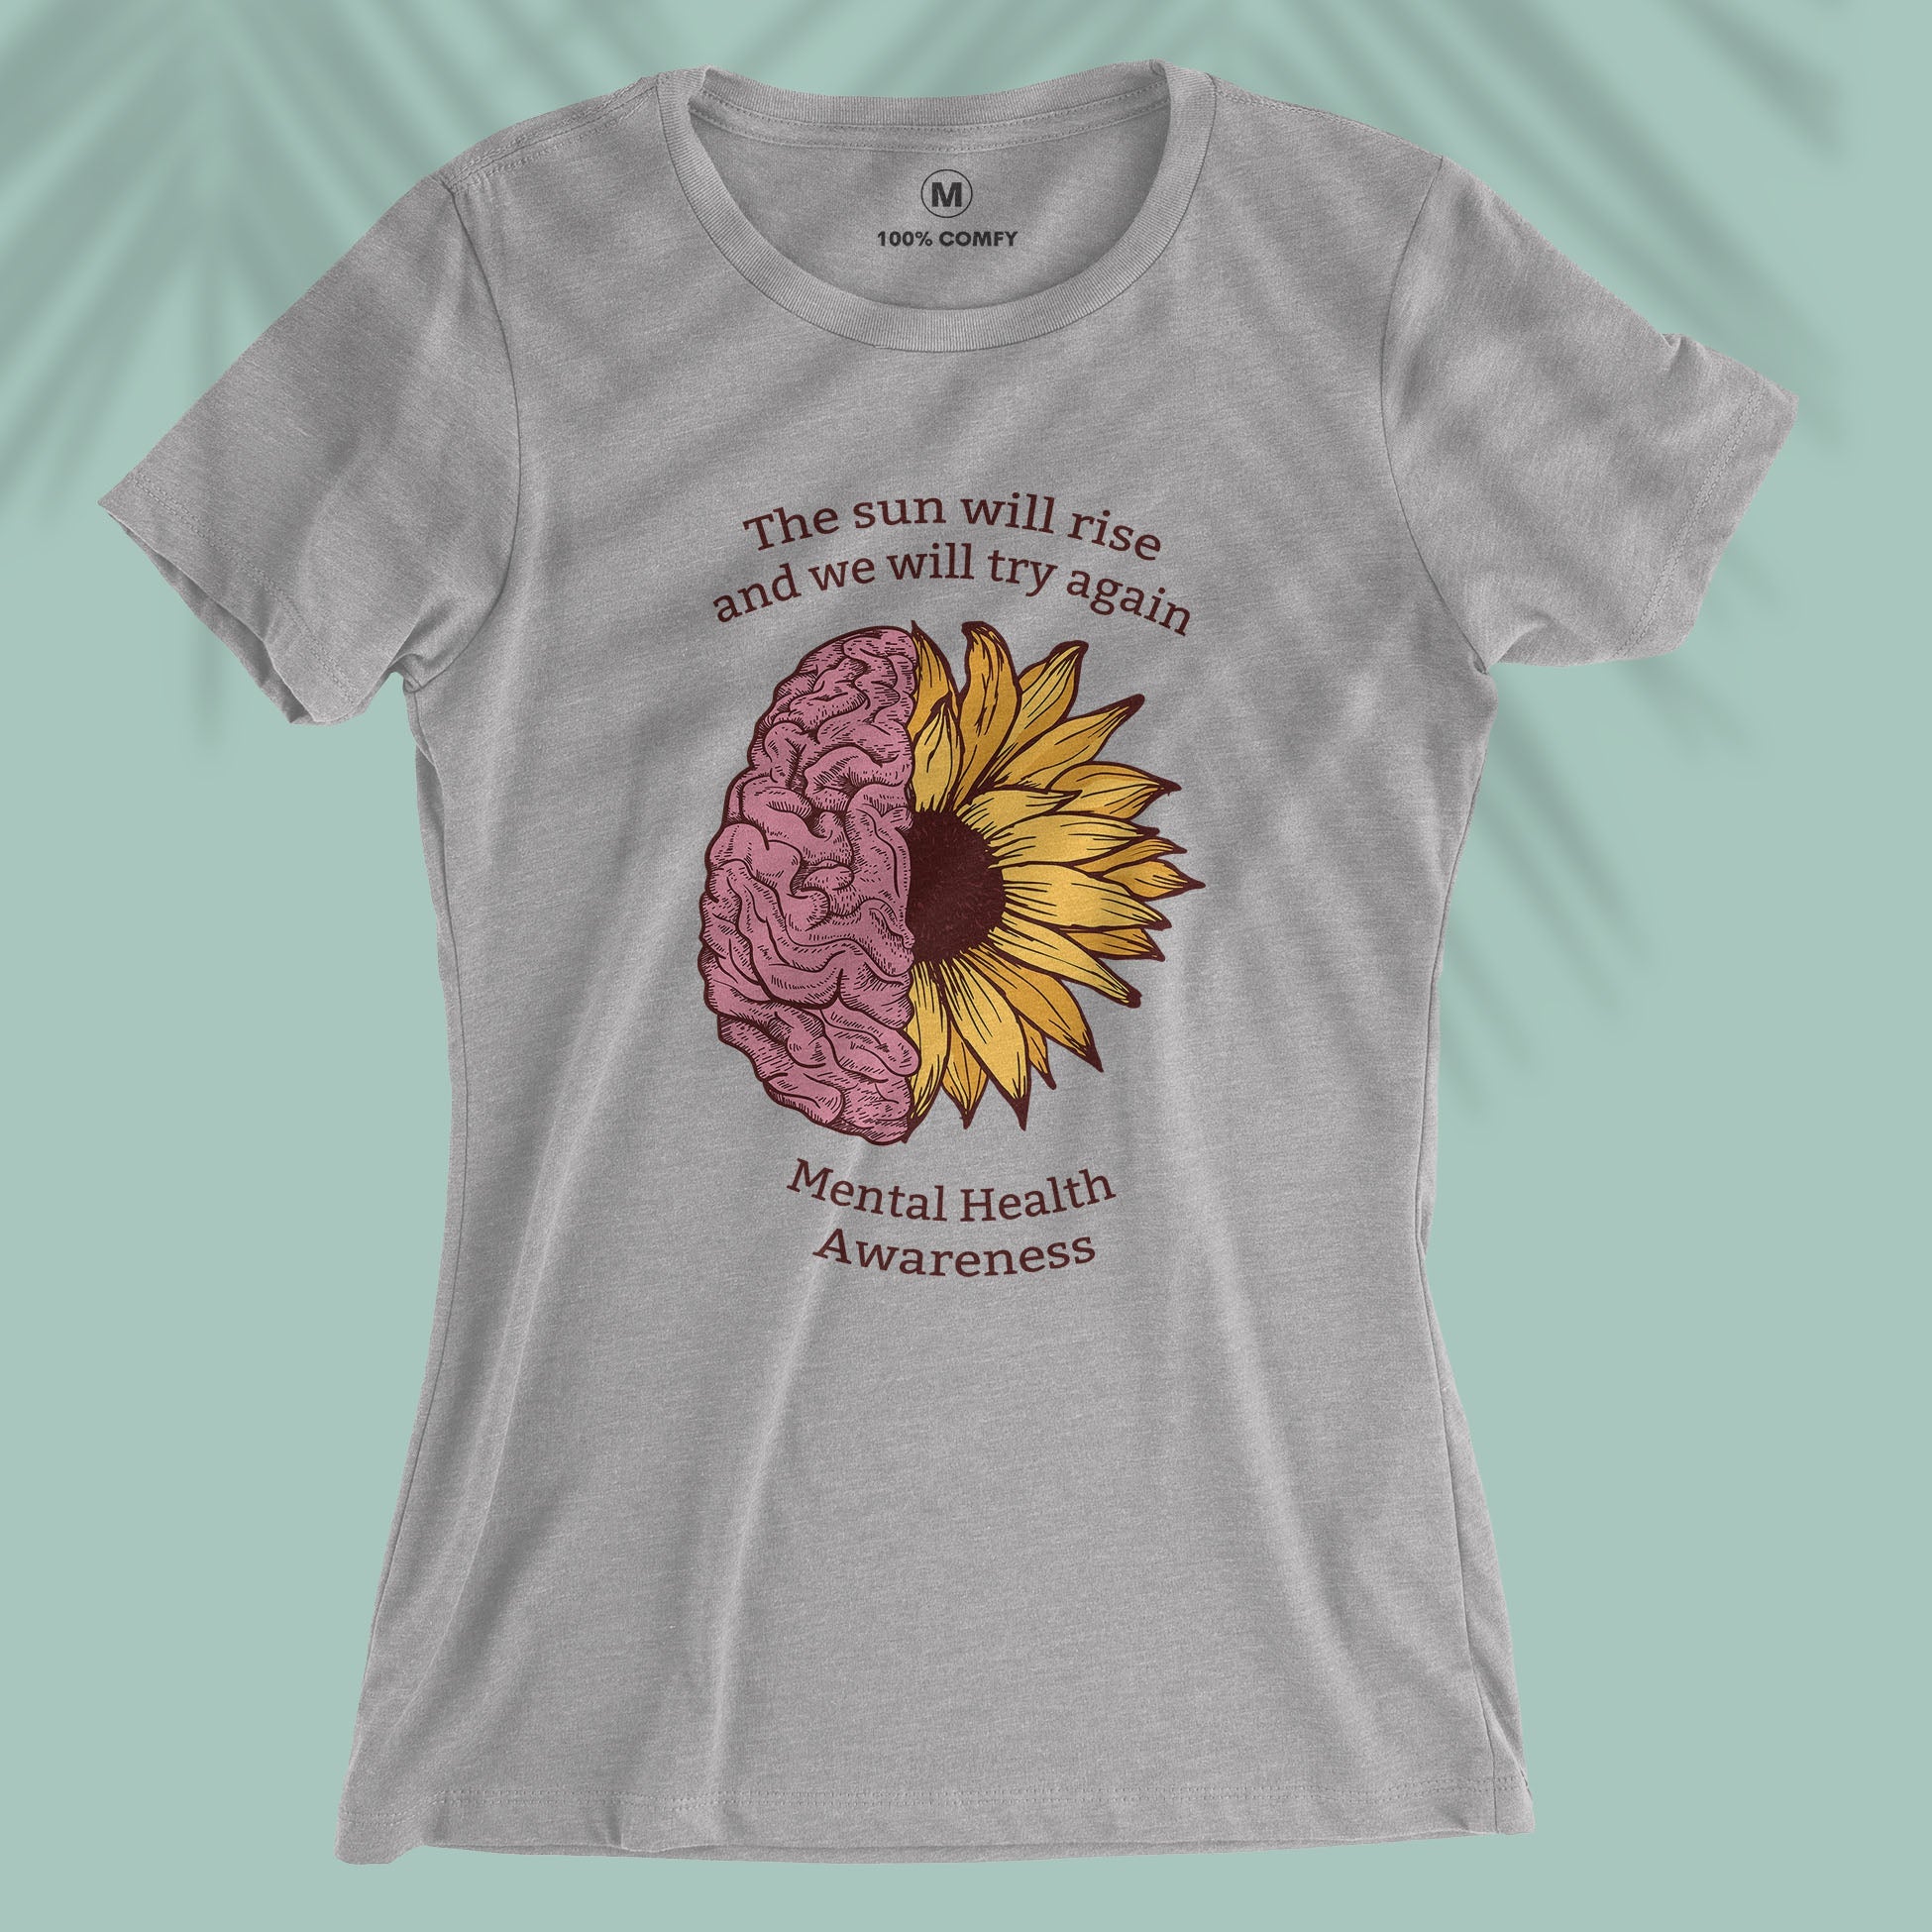 Mental Health Awareness - Women T-shirt